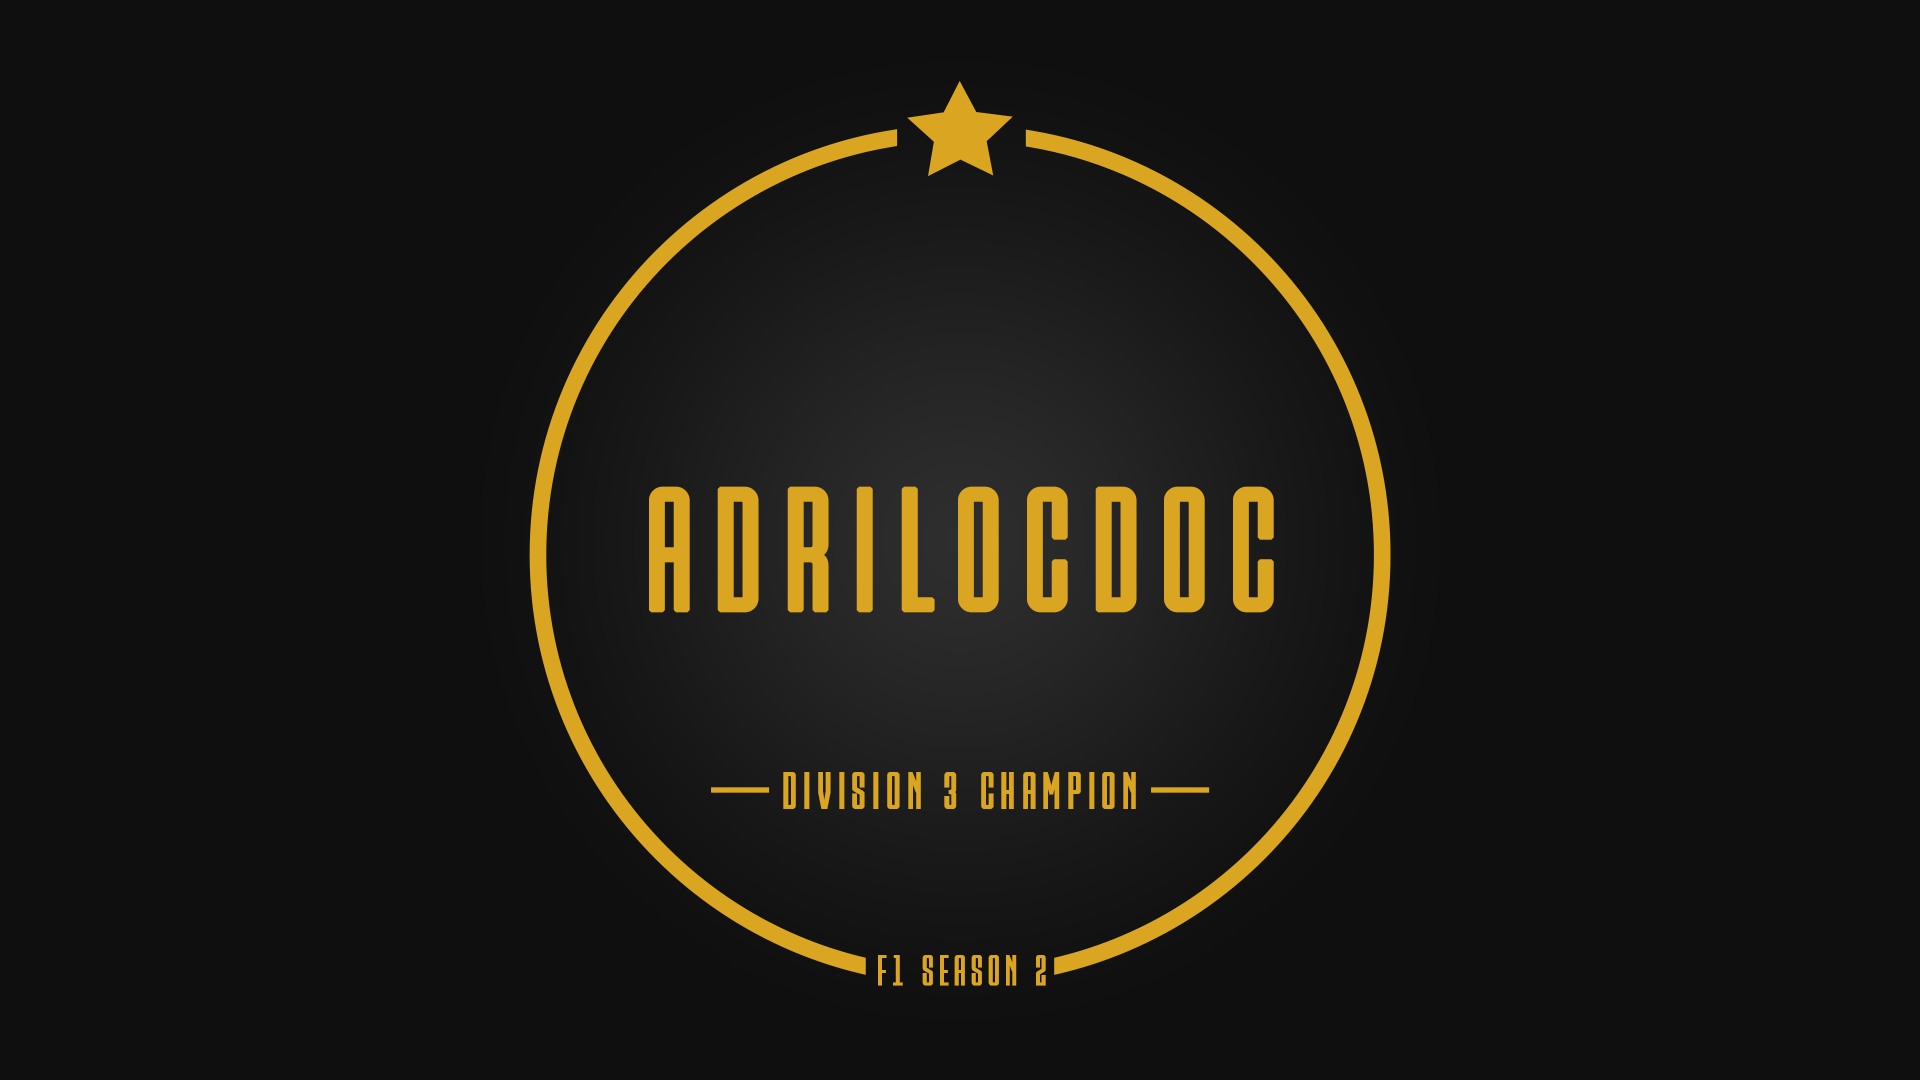 Division 3 Champion - adrilocdoc